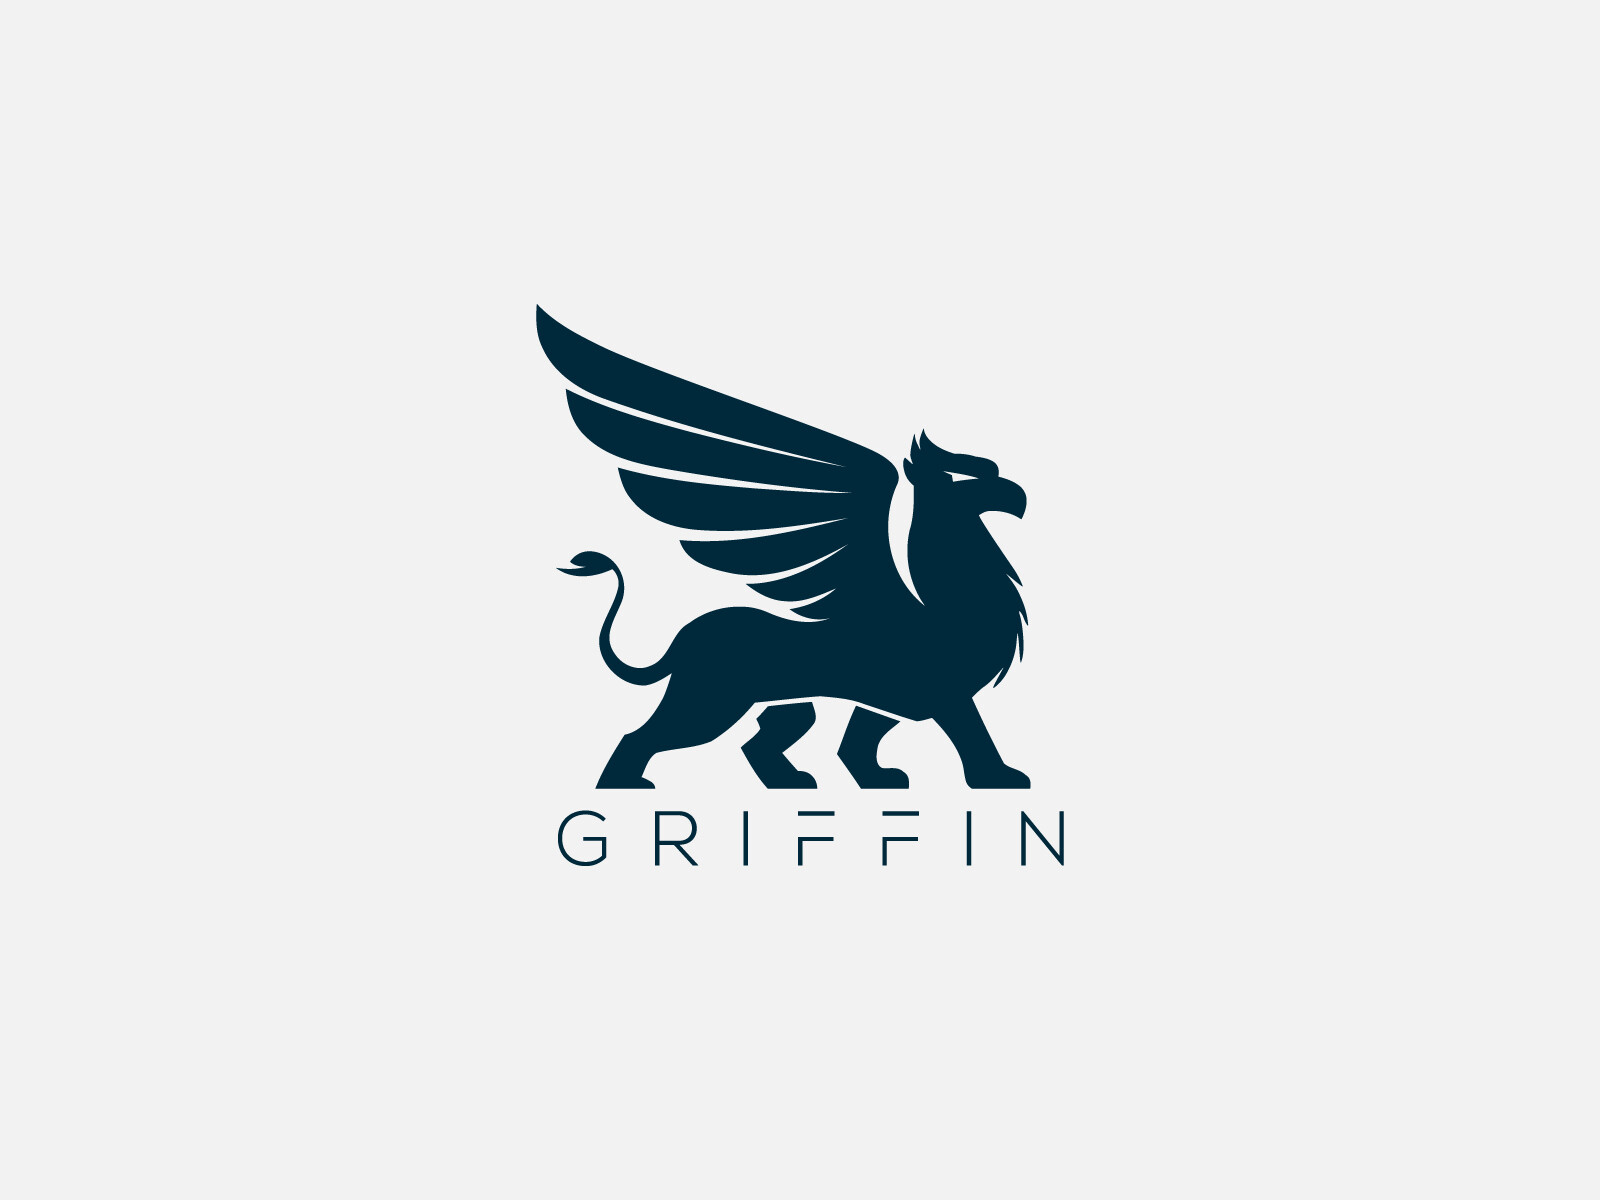 ArtStation - Griffin Logo For Sale